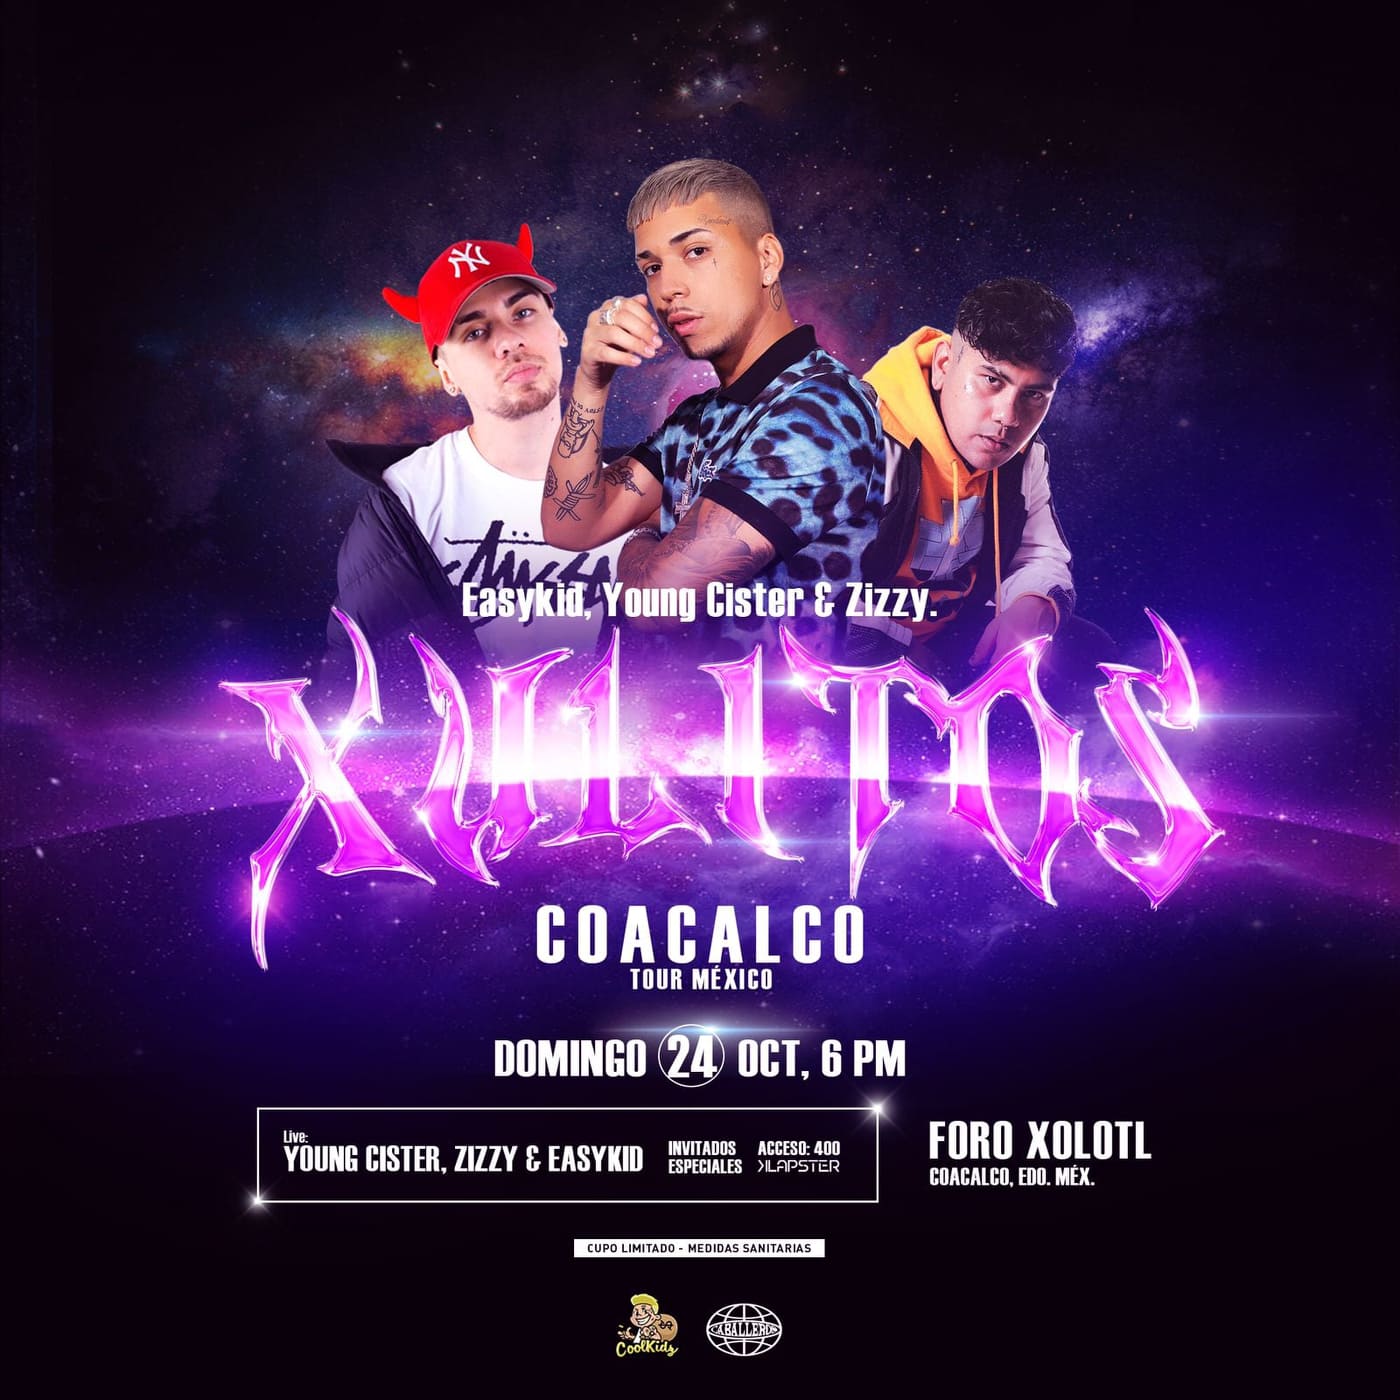 XULITOS TOUR MEXICO / COACALCO